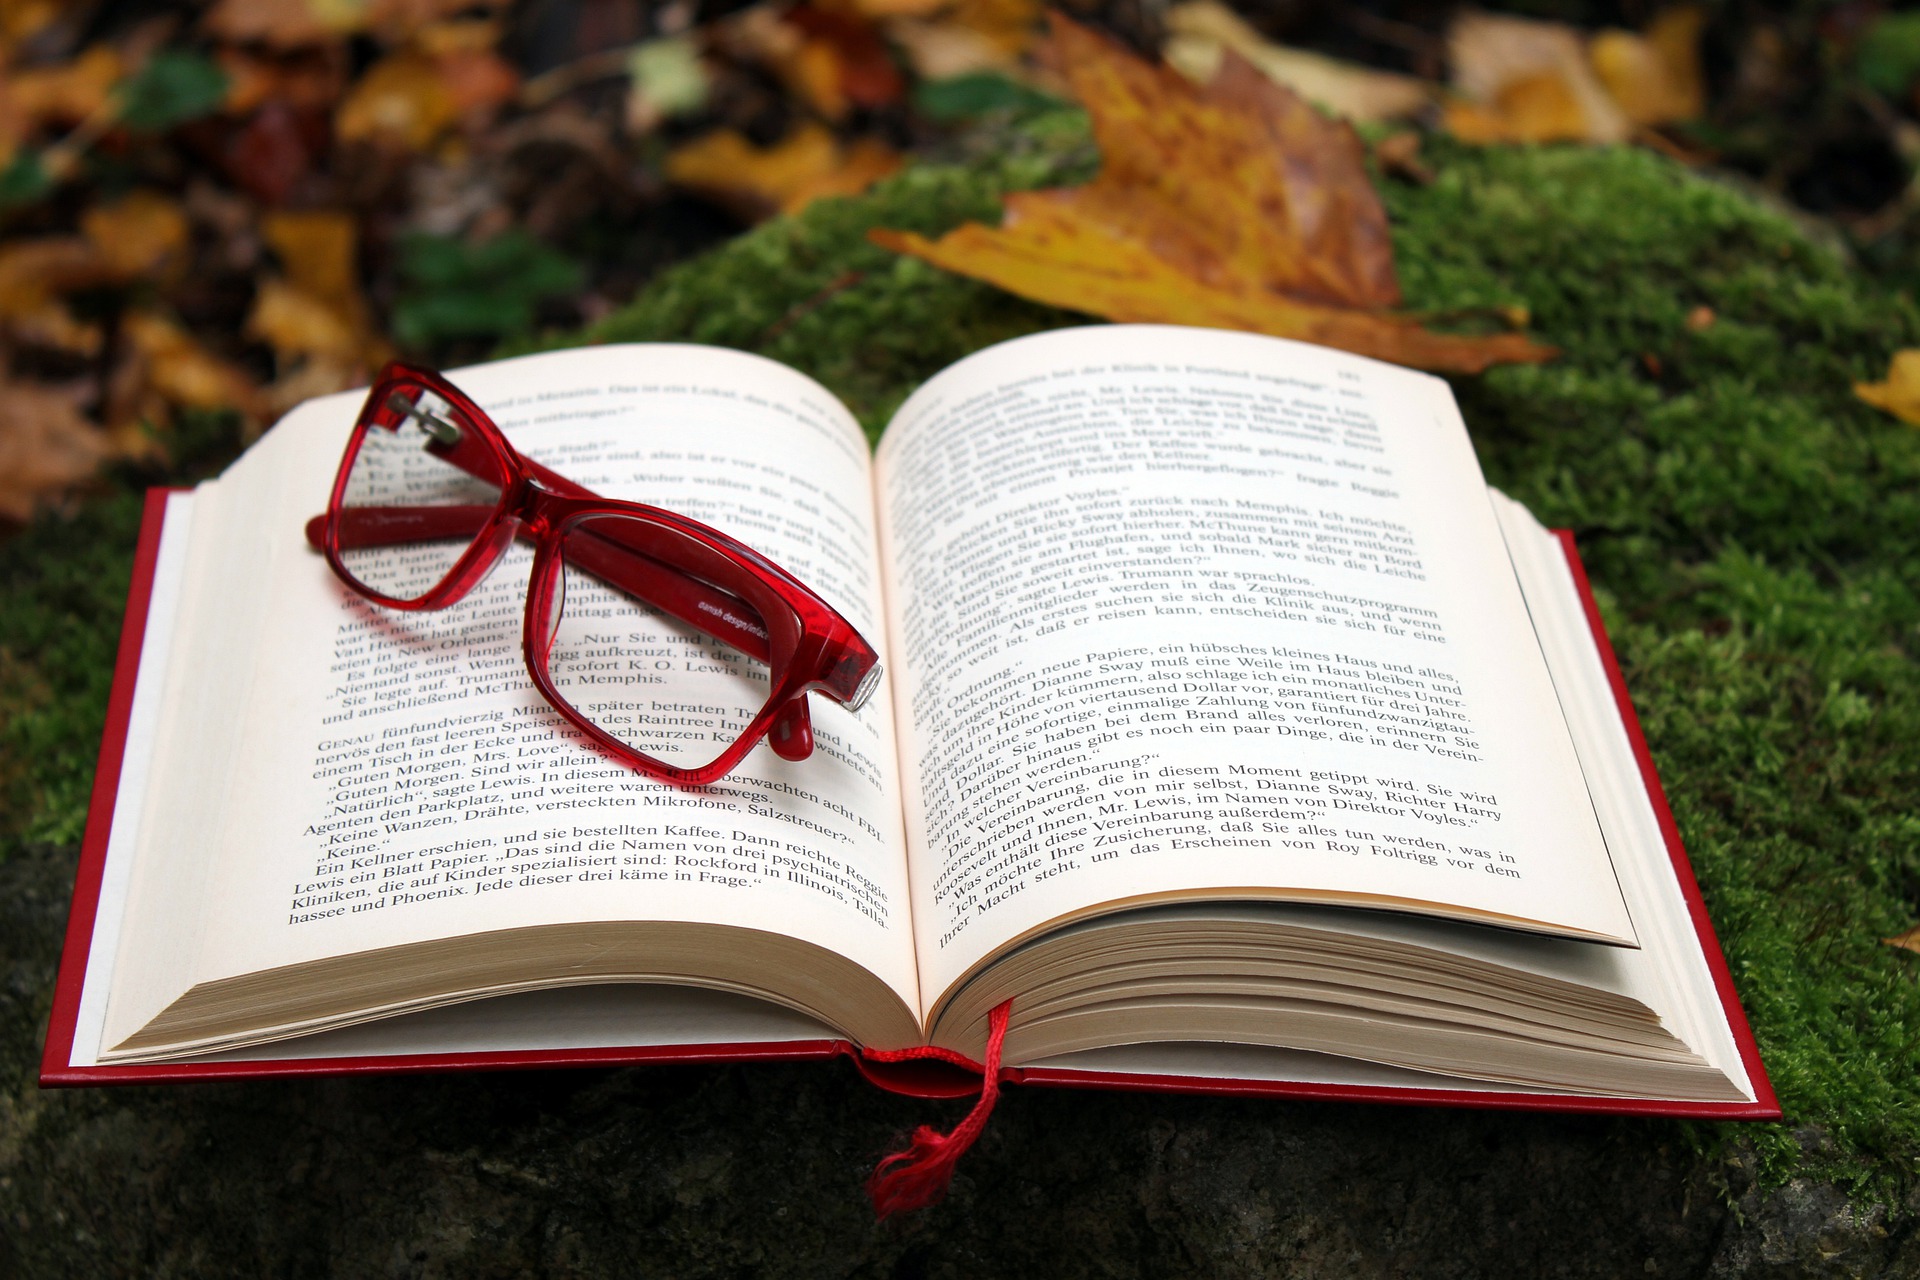 paire de lunettes rouge posée sur un livre ouvert sur fond de feuilles d'automne